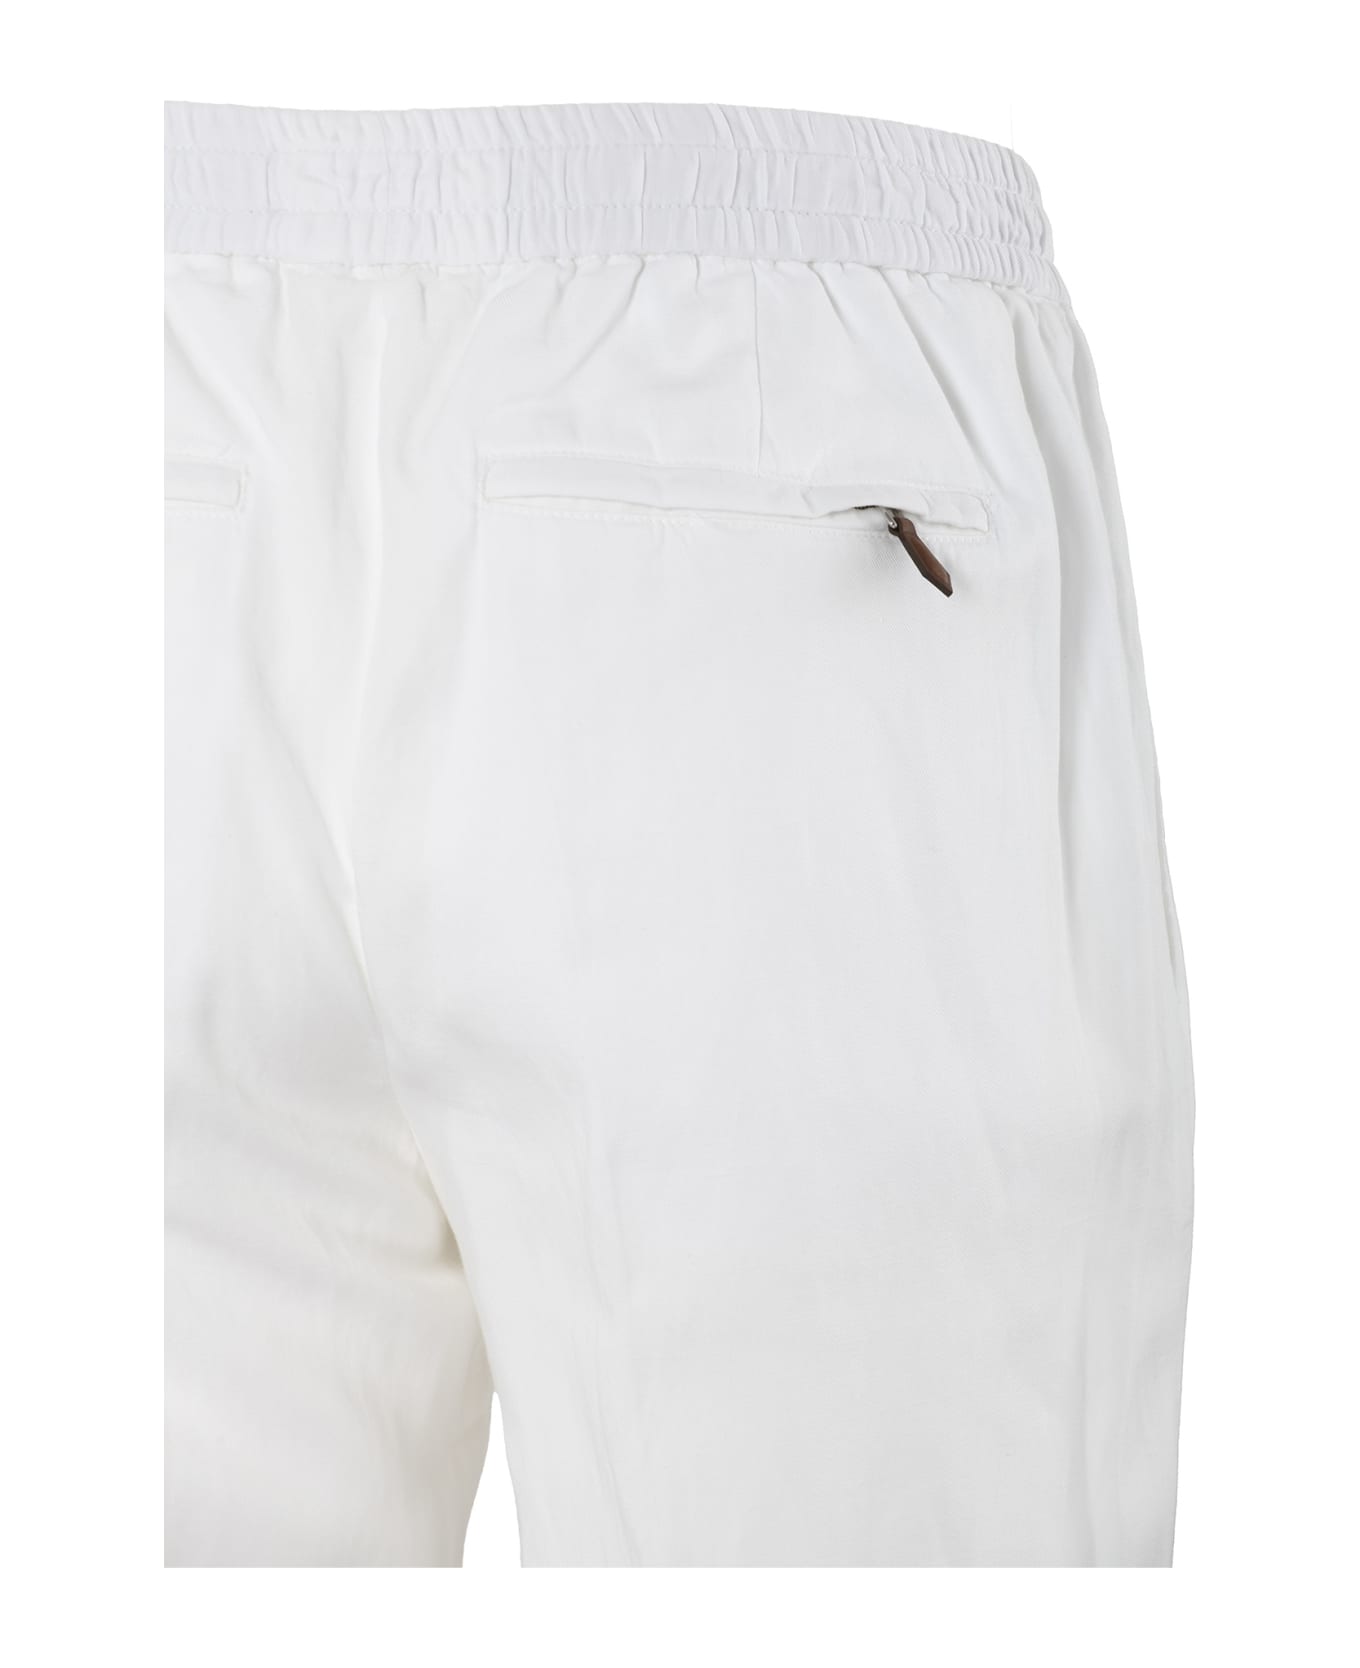 PT Torino Pt01 Trousers White - White